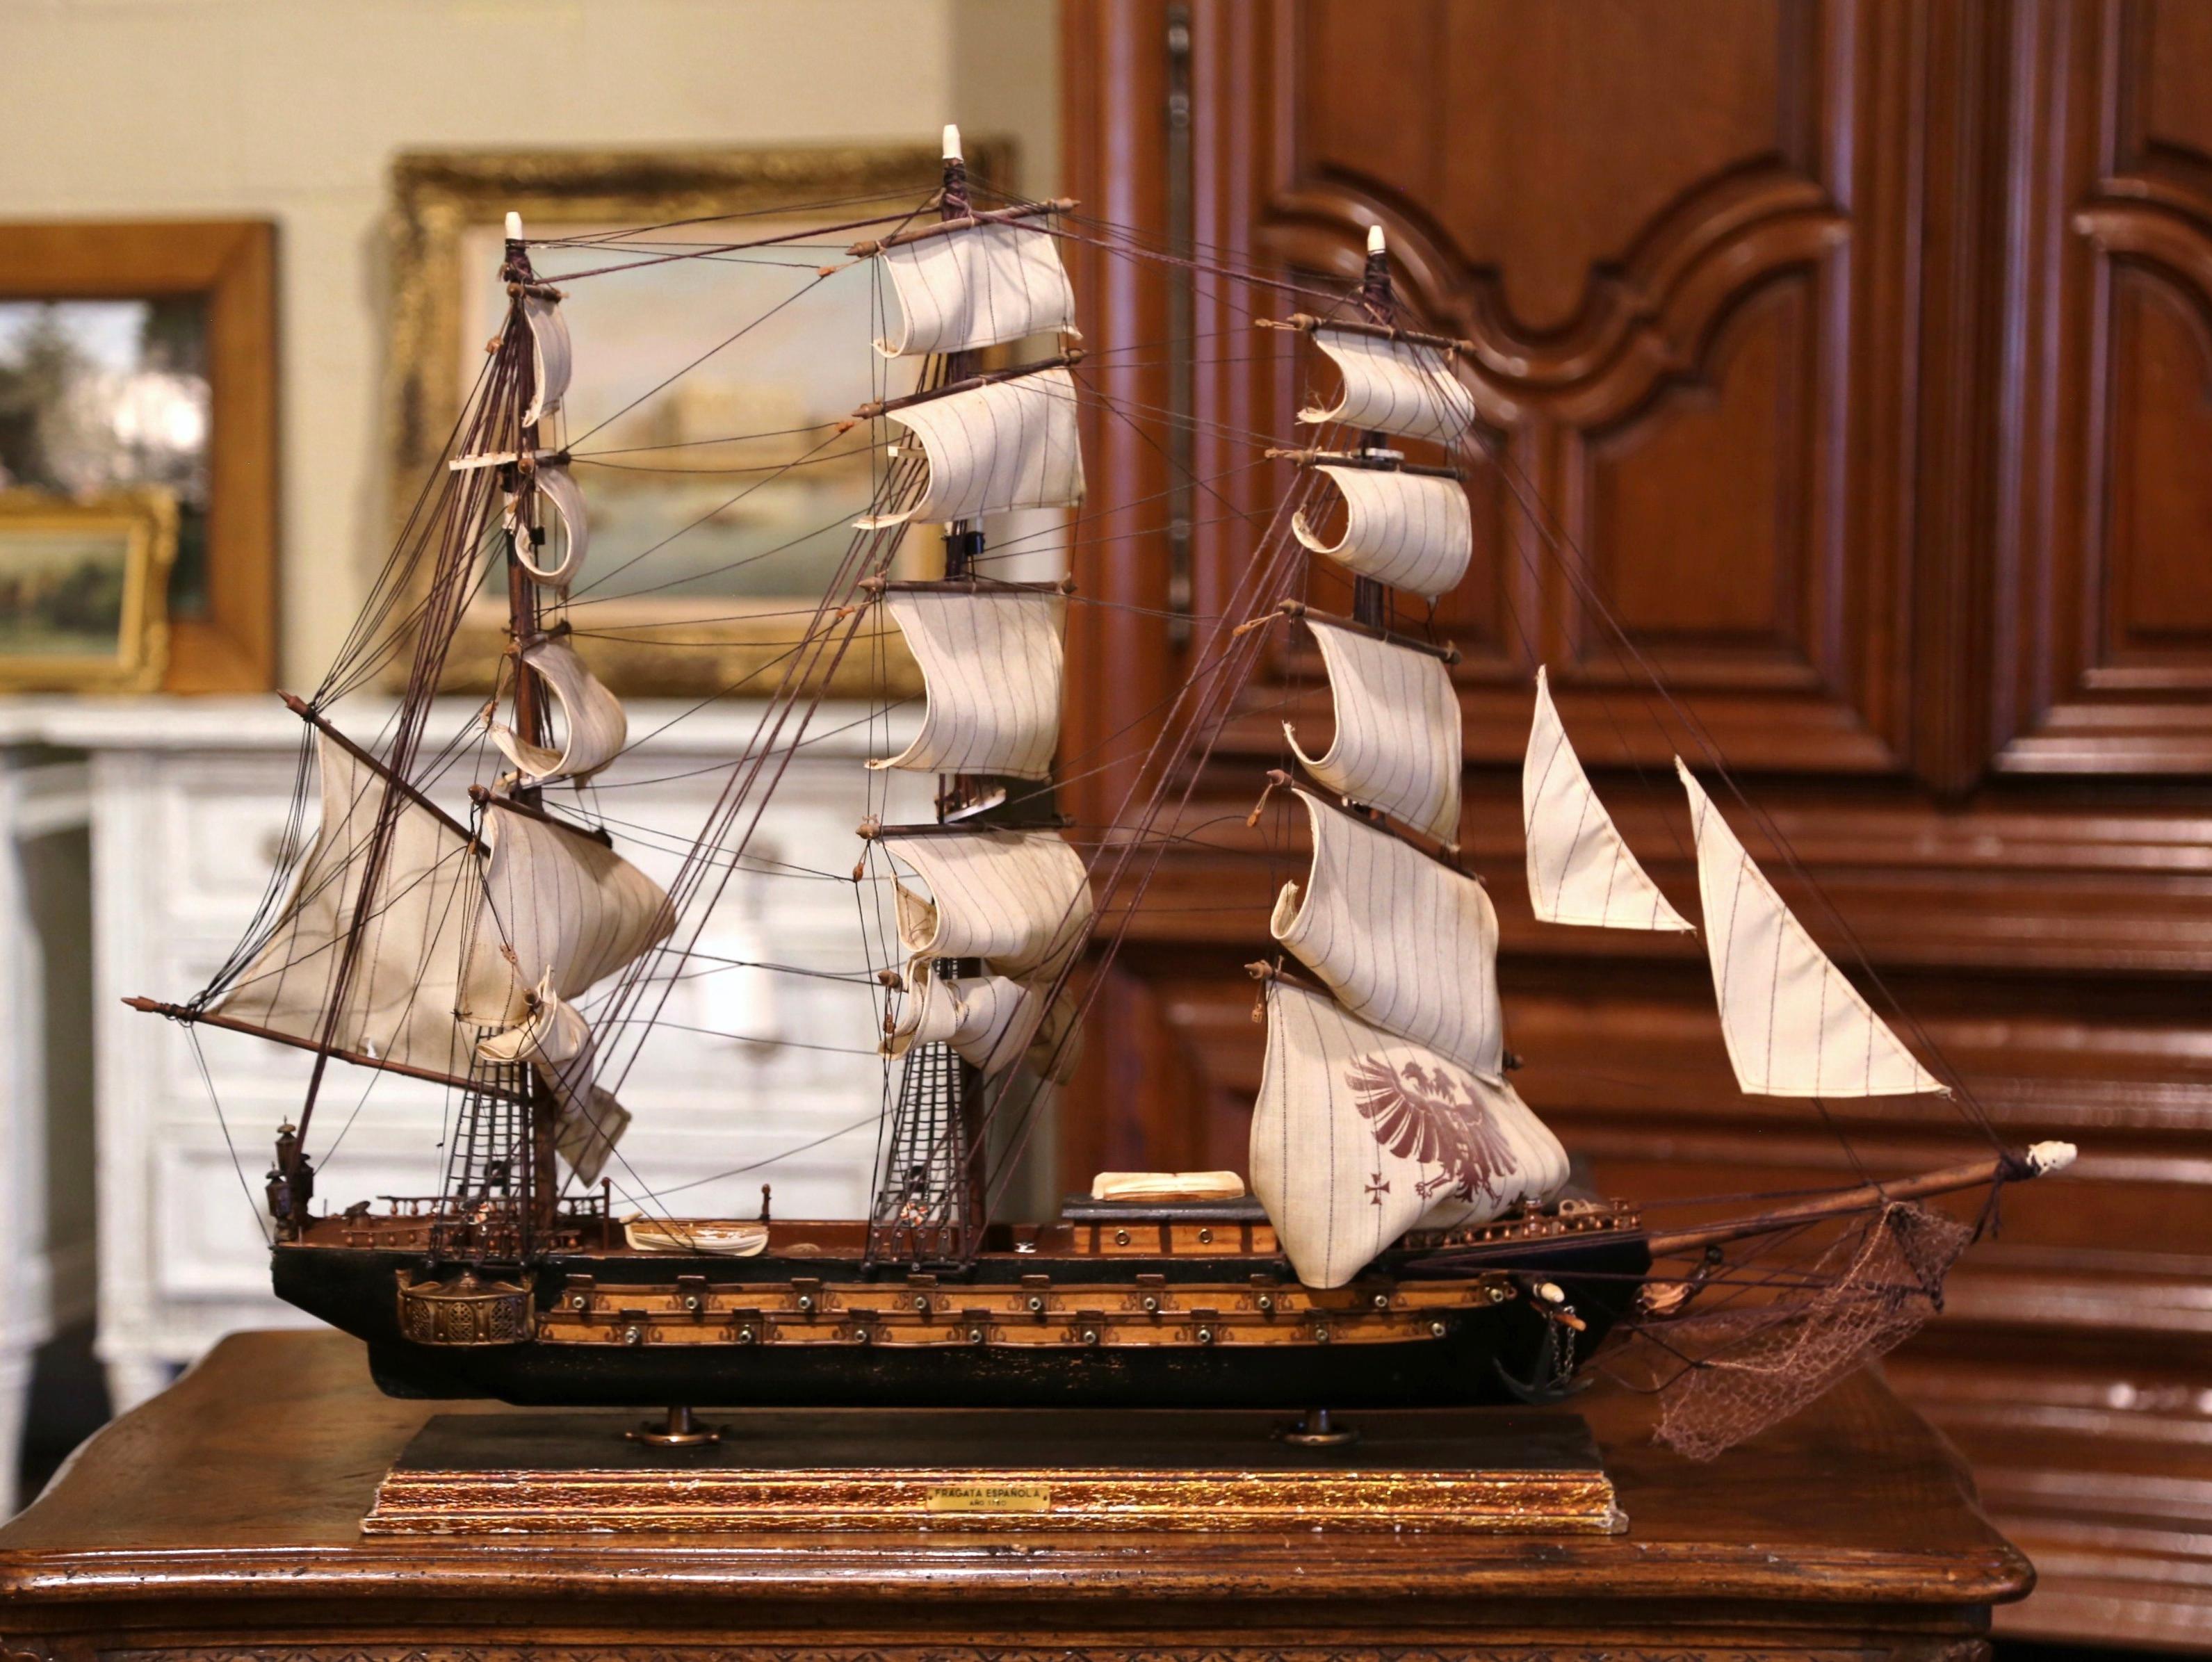 fragata espanola ano 1780 model ship